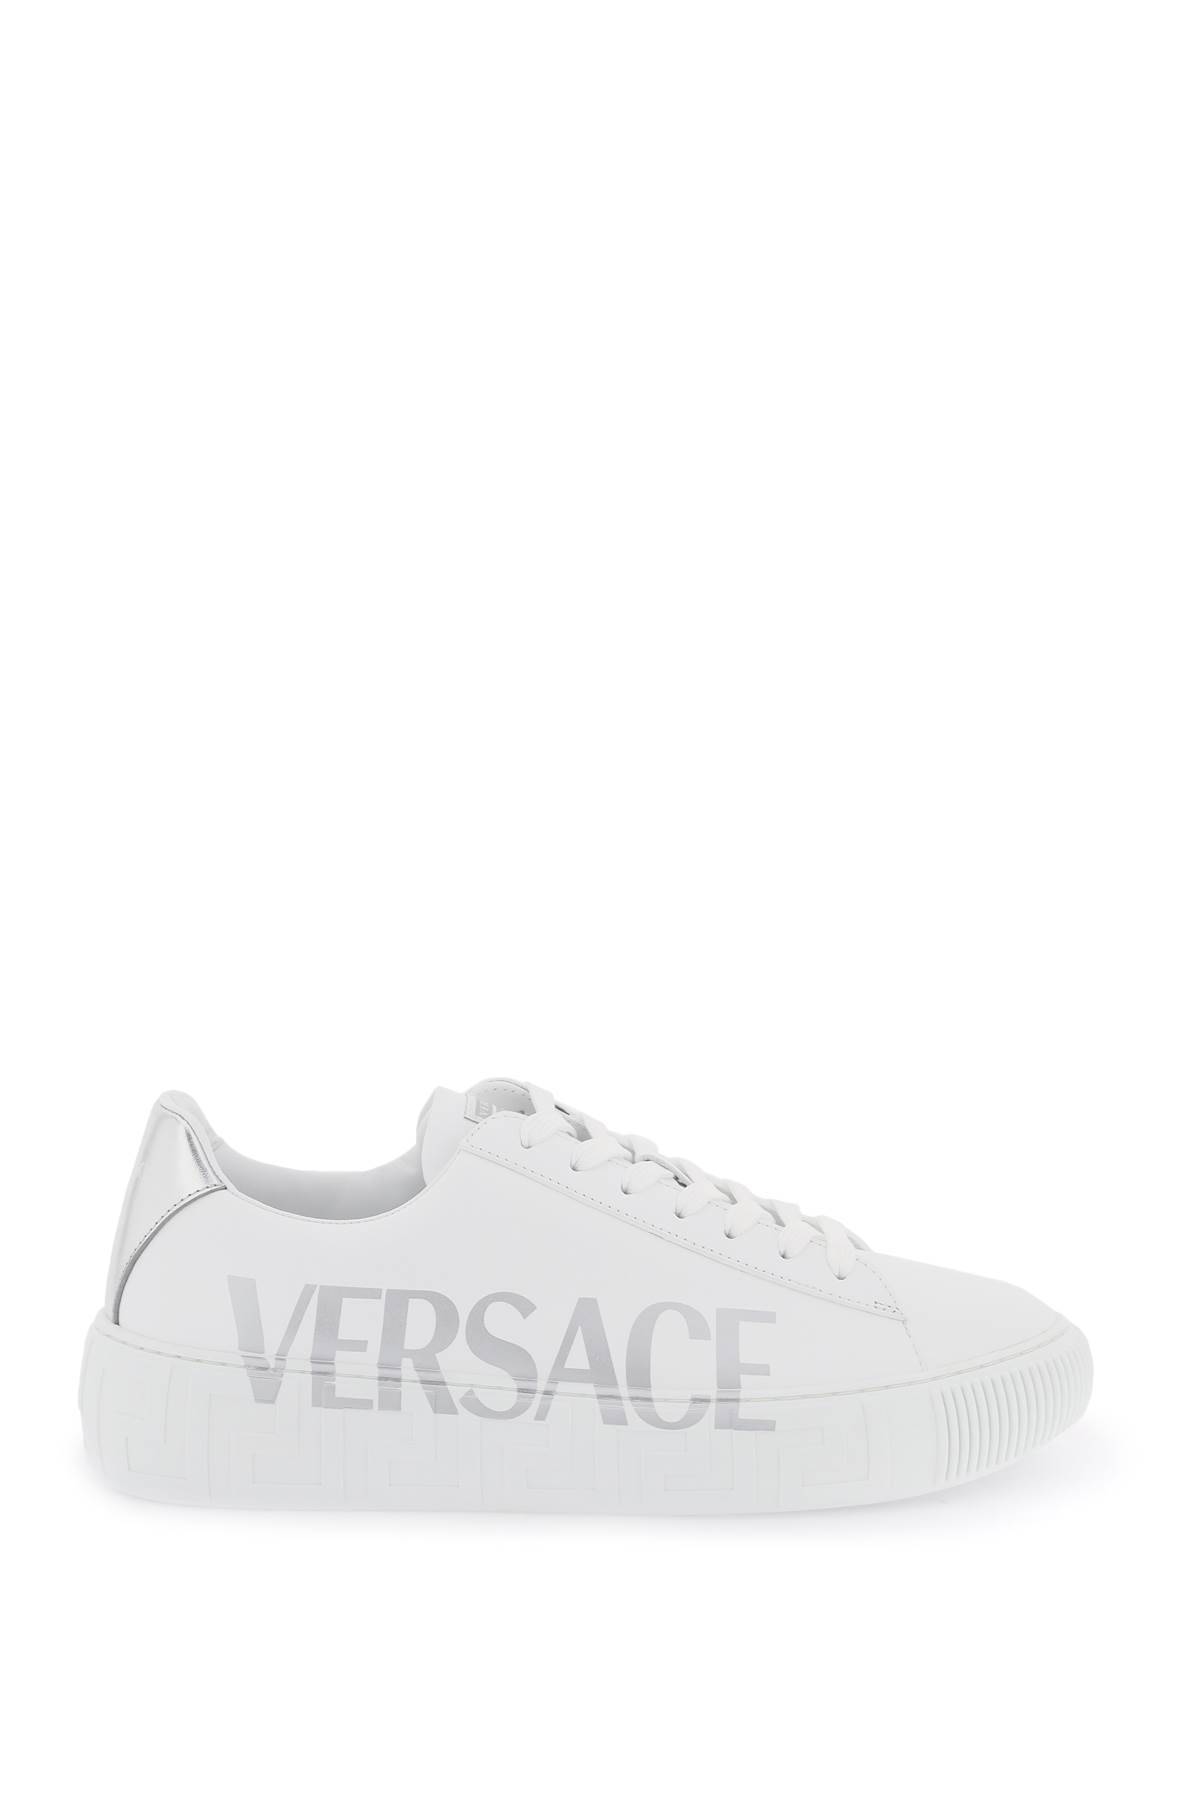 Versace VERSACE 'greca' sneakers with logo